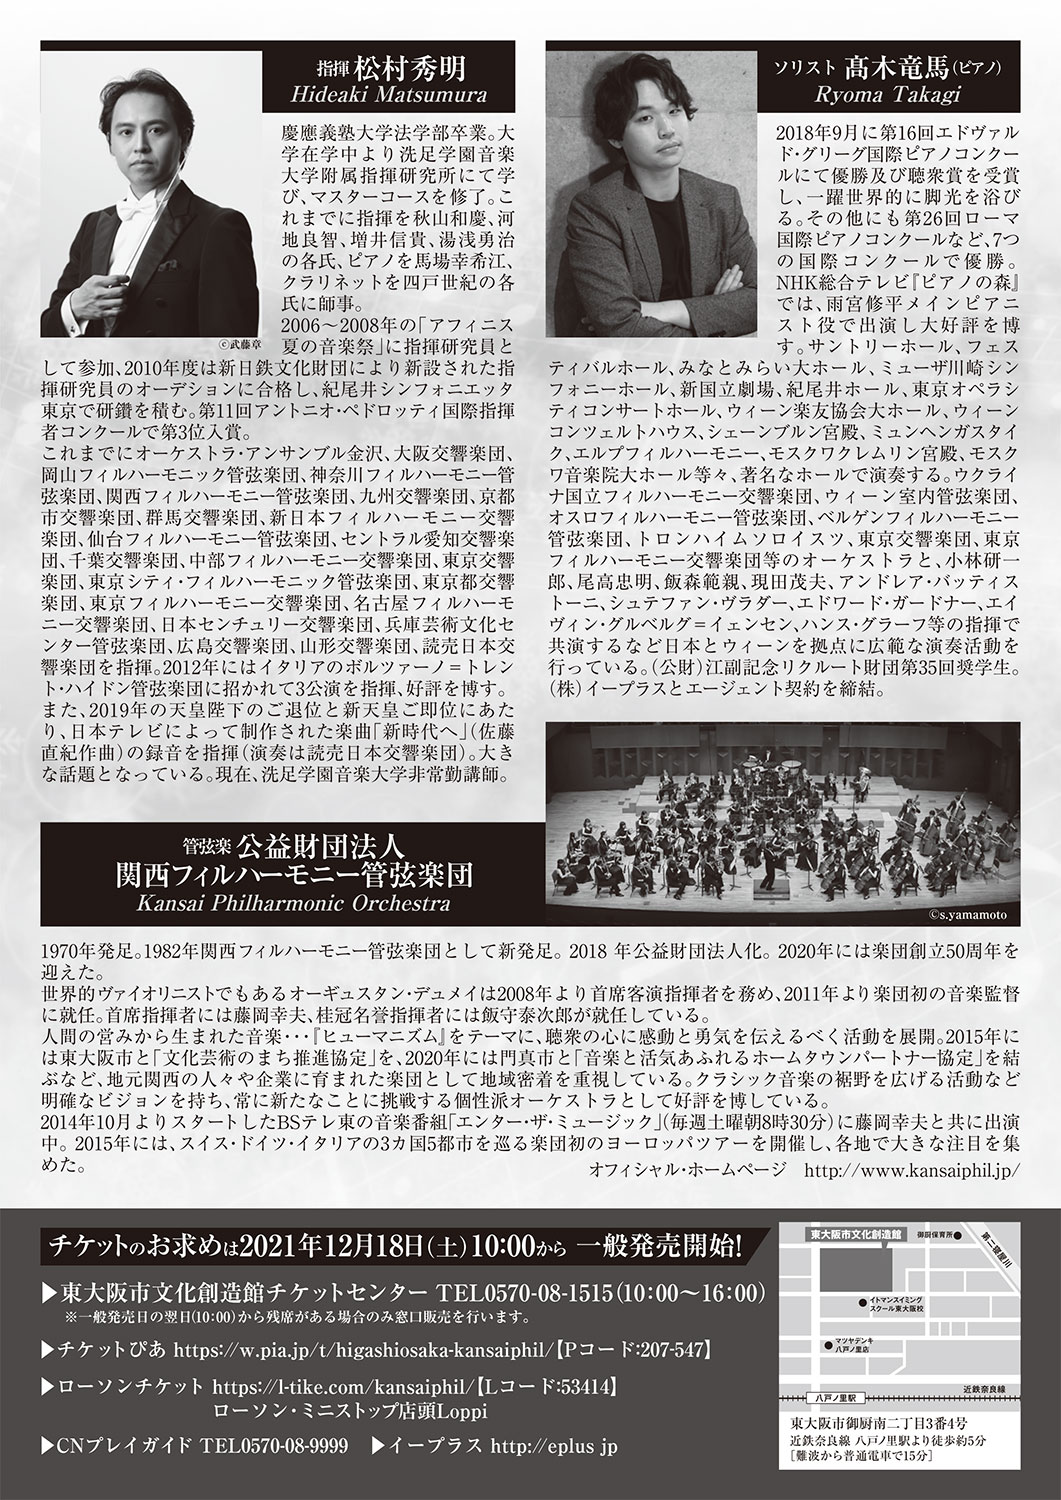  関西フィルハーモニー管弦楽団 東大阪演奏会チラシ裏面画像